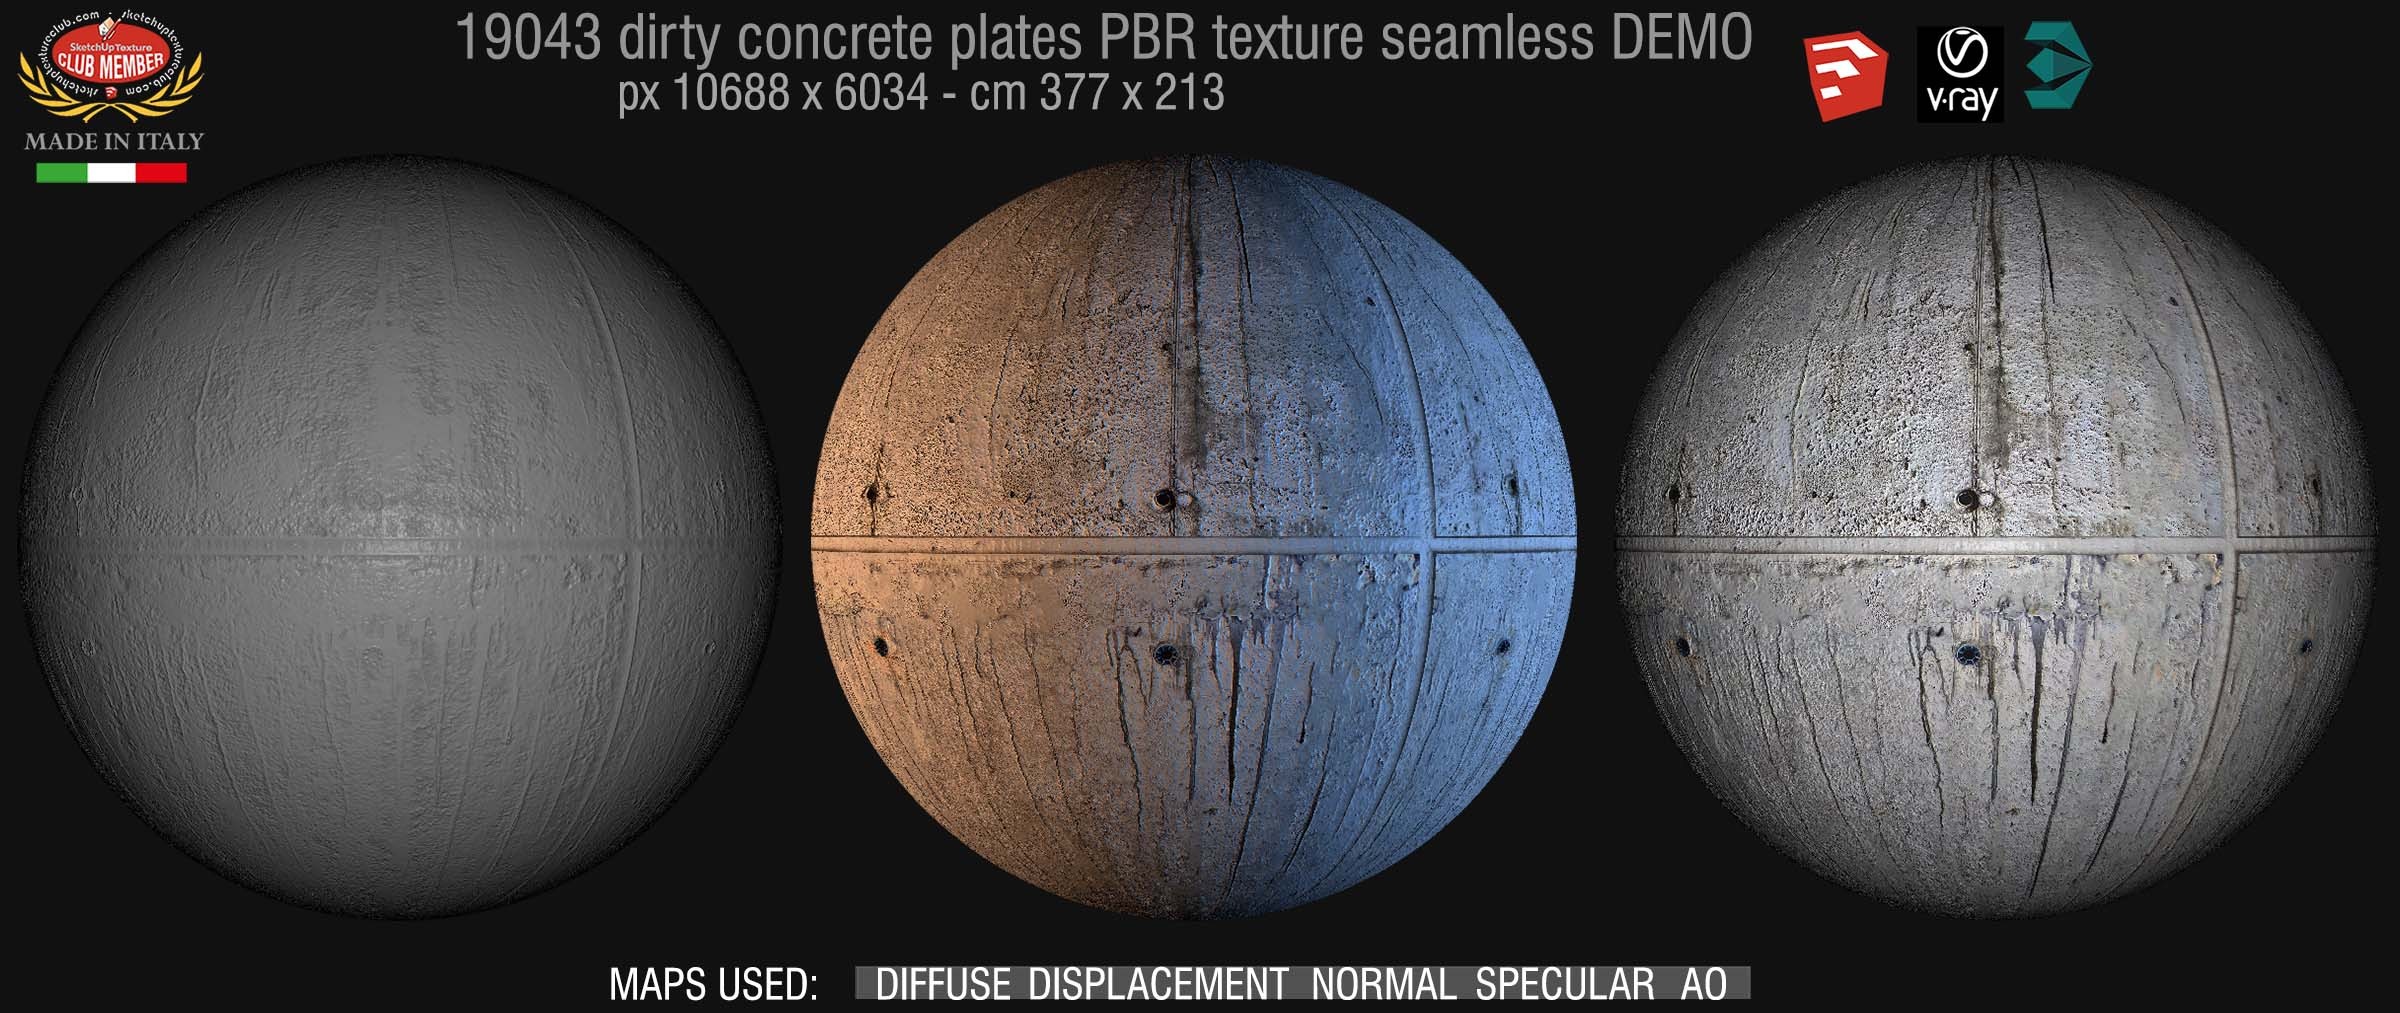 190243 Tadao ando concrete dirty plates PBR seamless texture DEMO